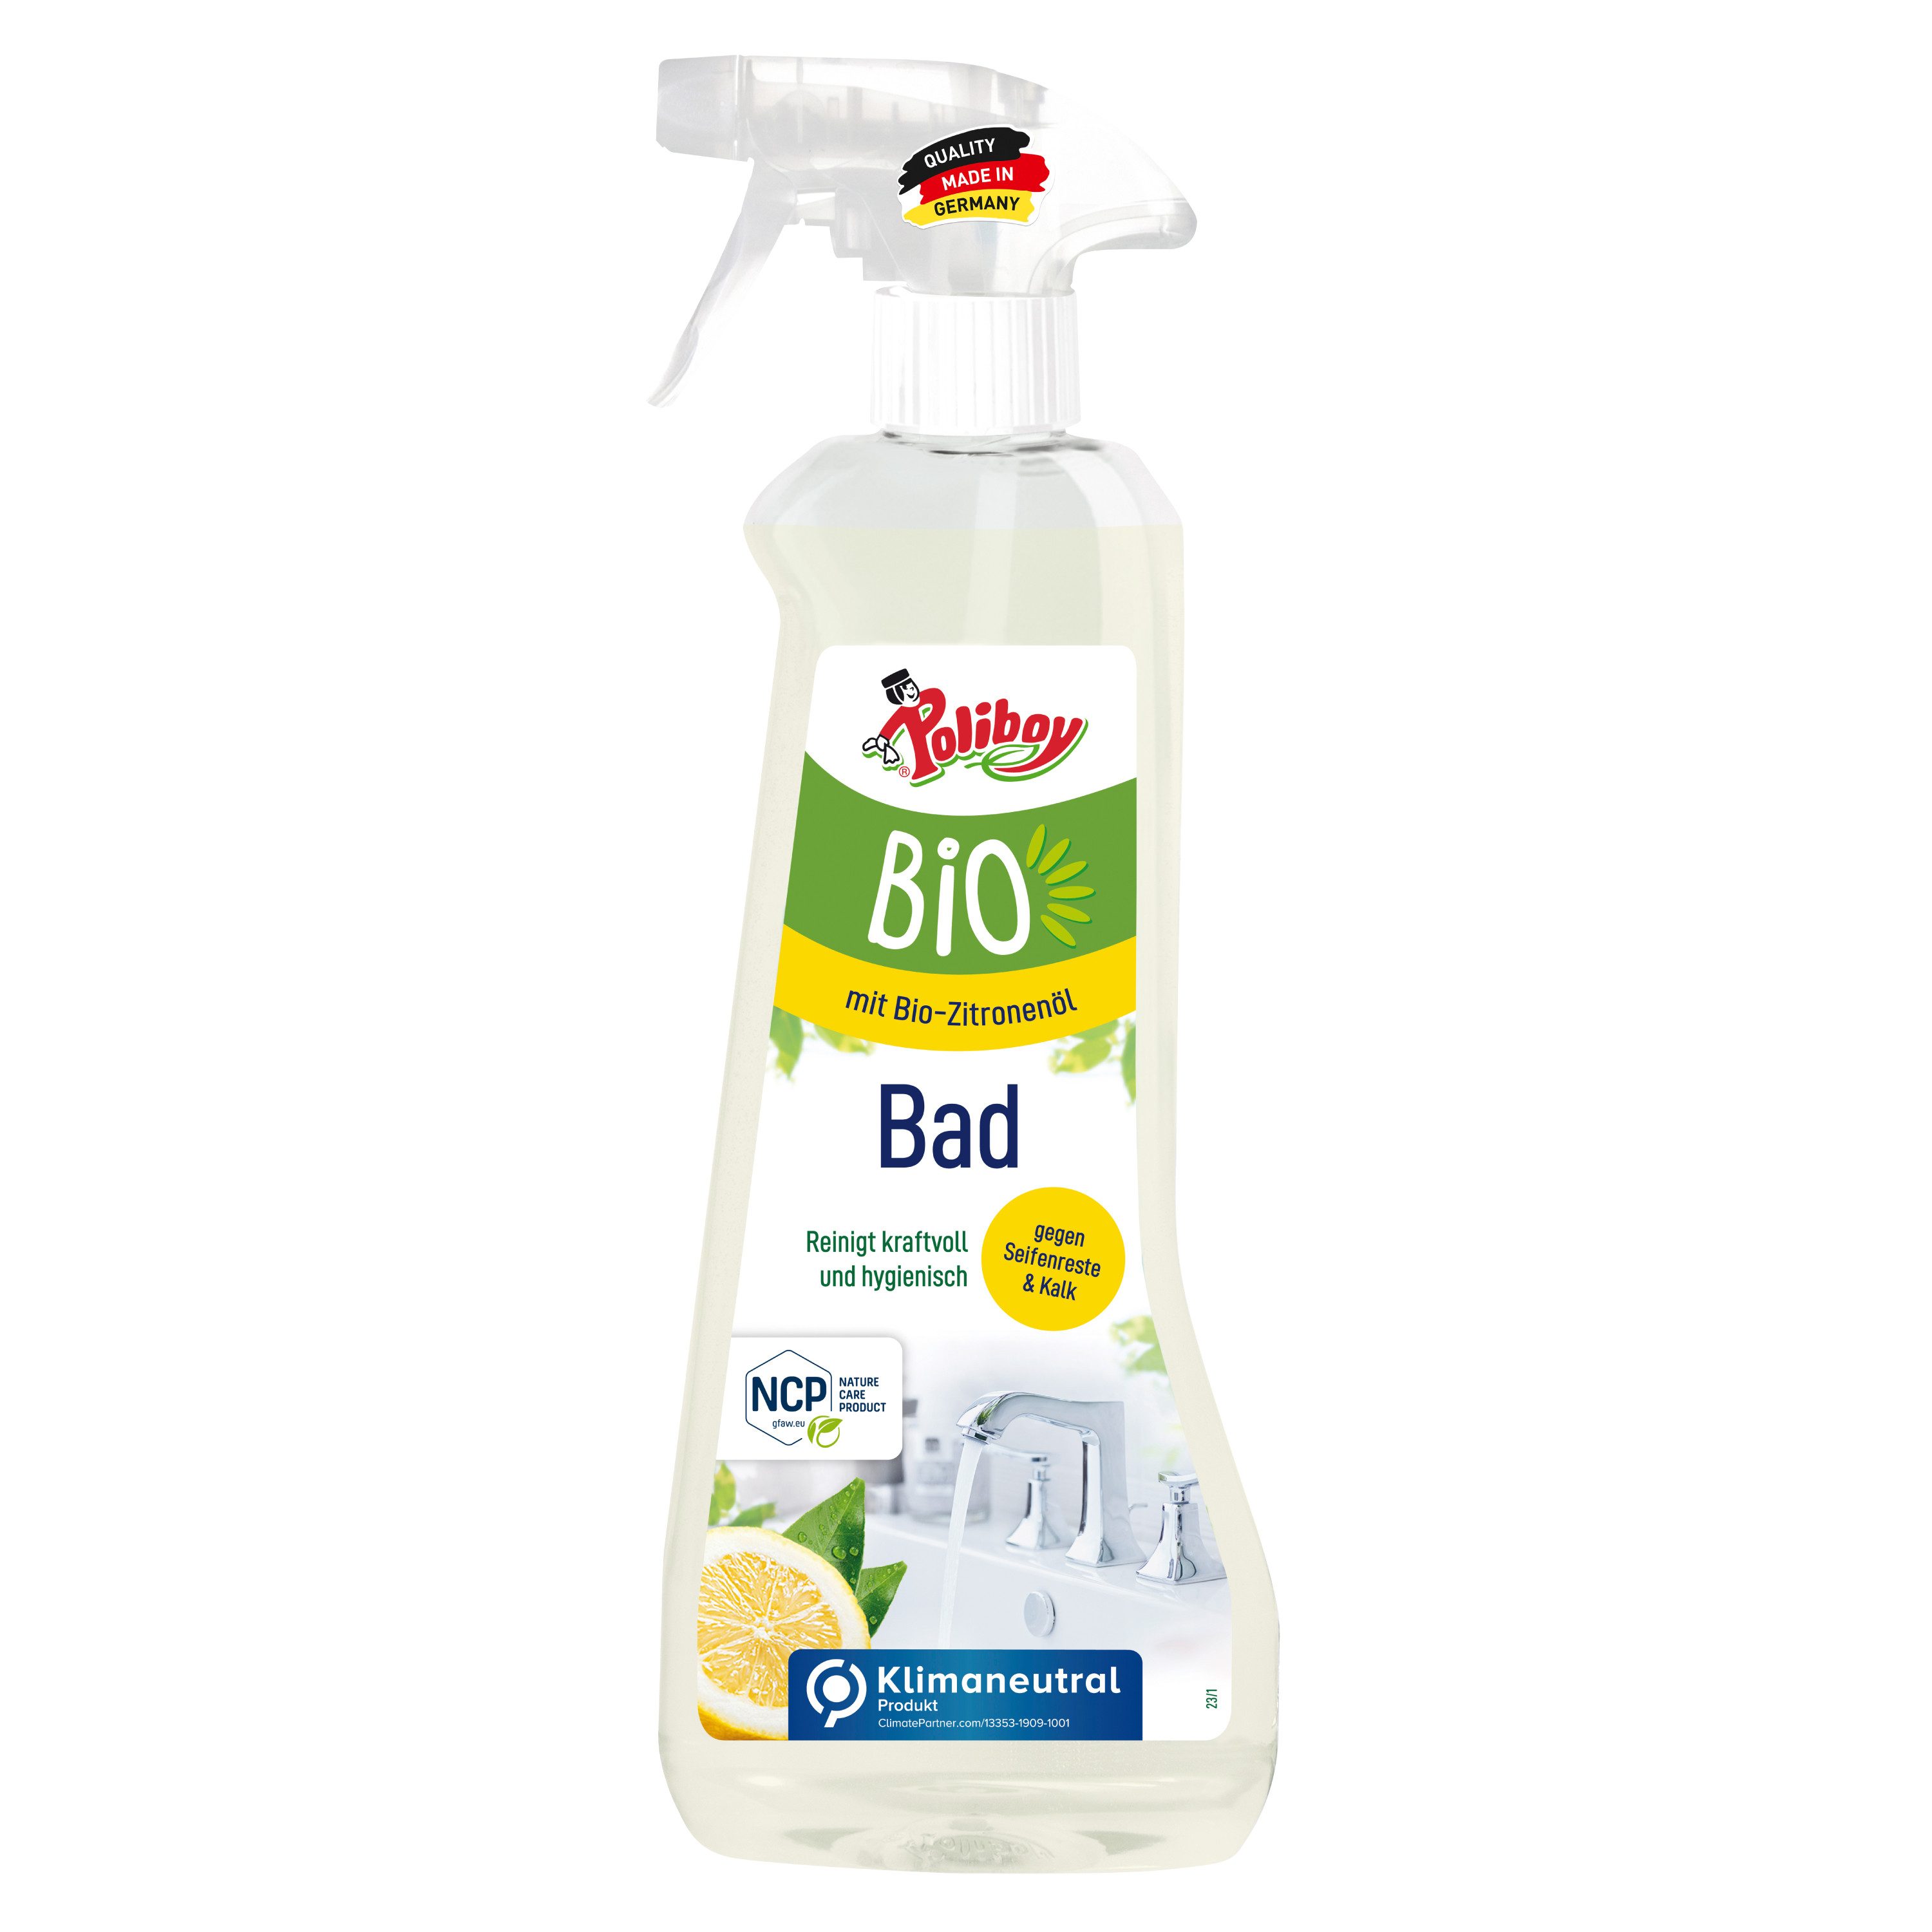 poliboy - 500 ml - Bio Badreiniger (zum einfachen Reinigen des Badezimmers geeignet - Made in Germany)